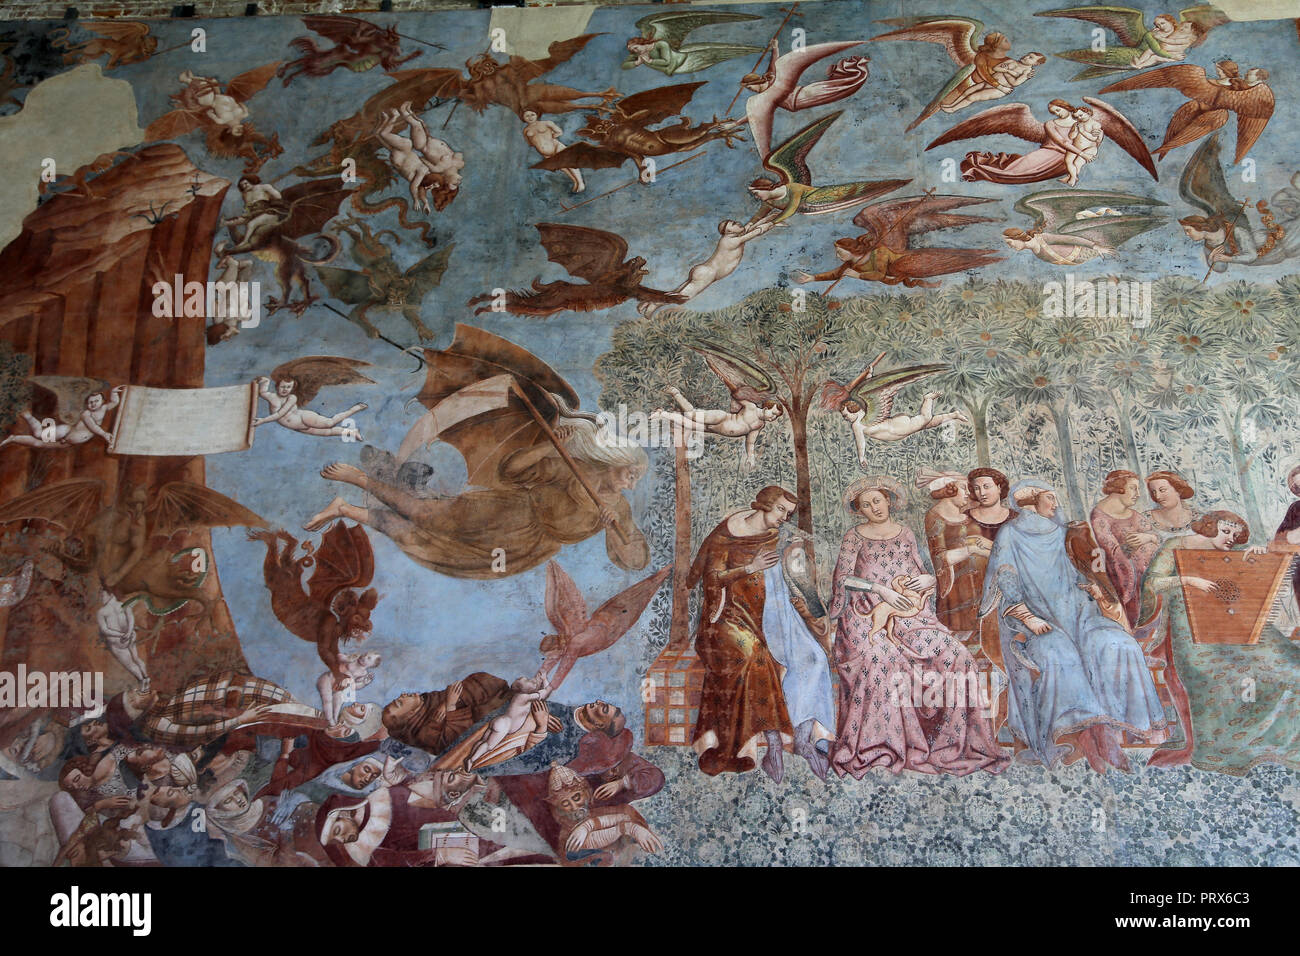 Buonamico Buffalmacco. El triunfo de la muerte. 1338-39. Camposanto. Pisa. Italia. Foto de stock